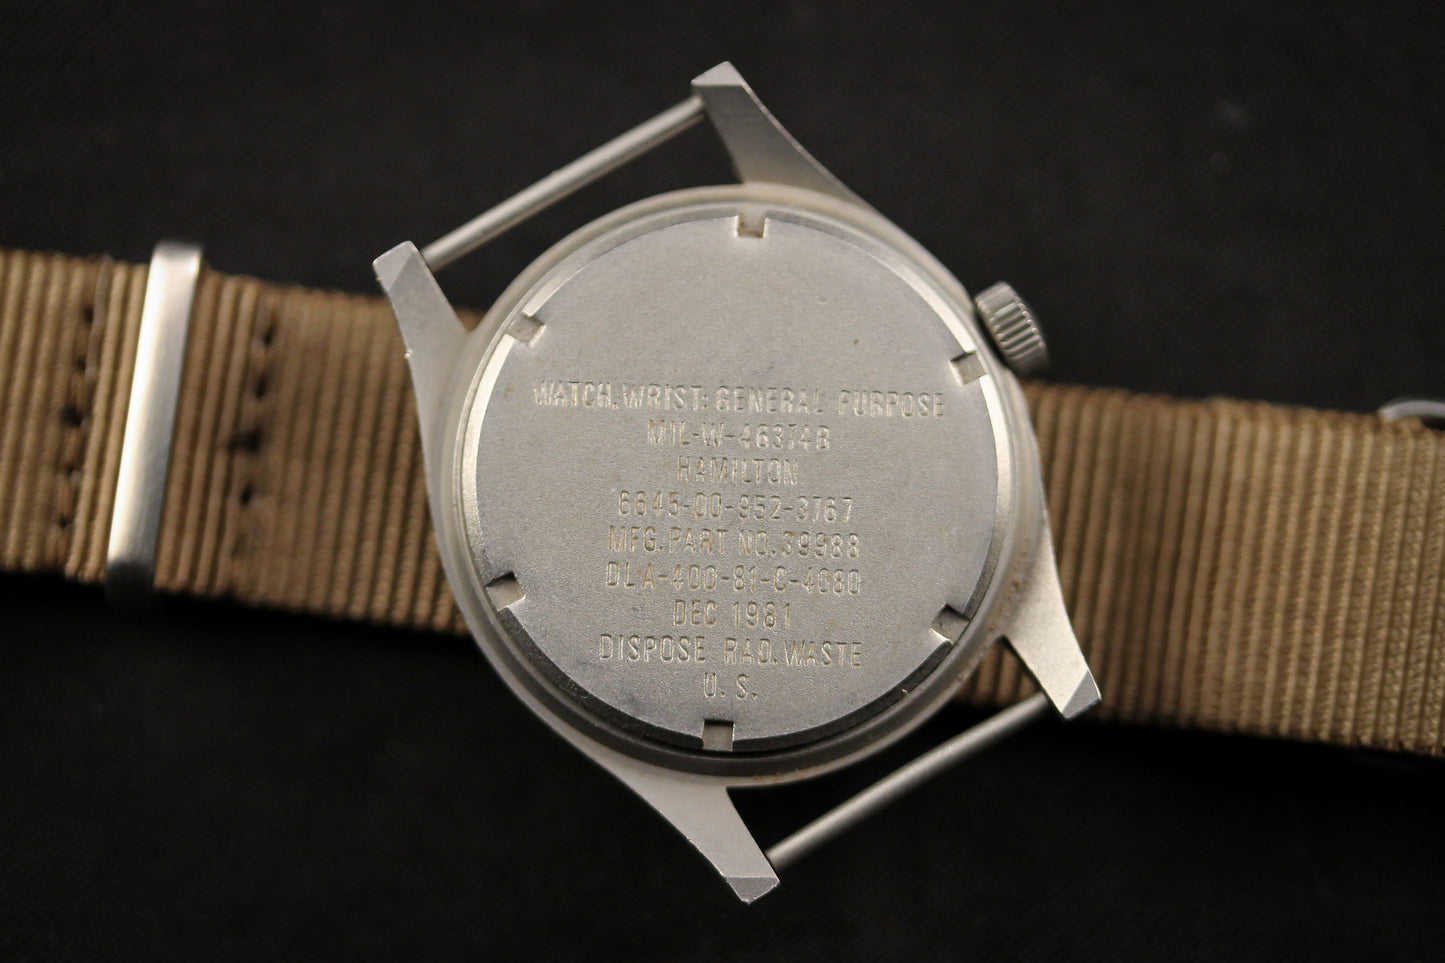 Hamilton GI Watch - Dec. 1981